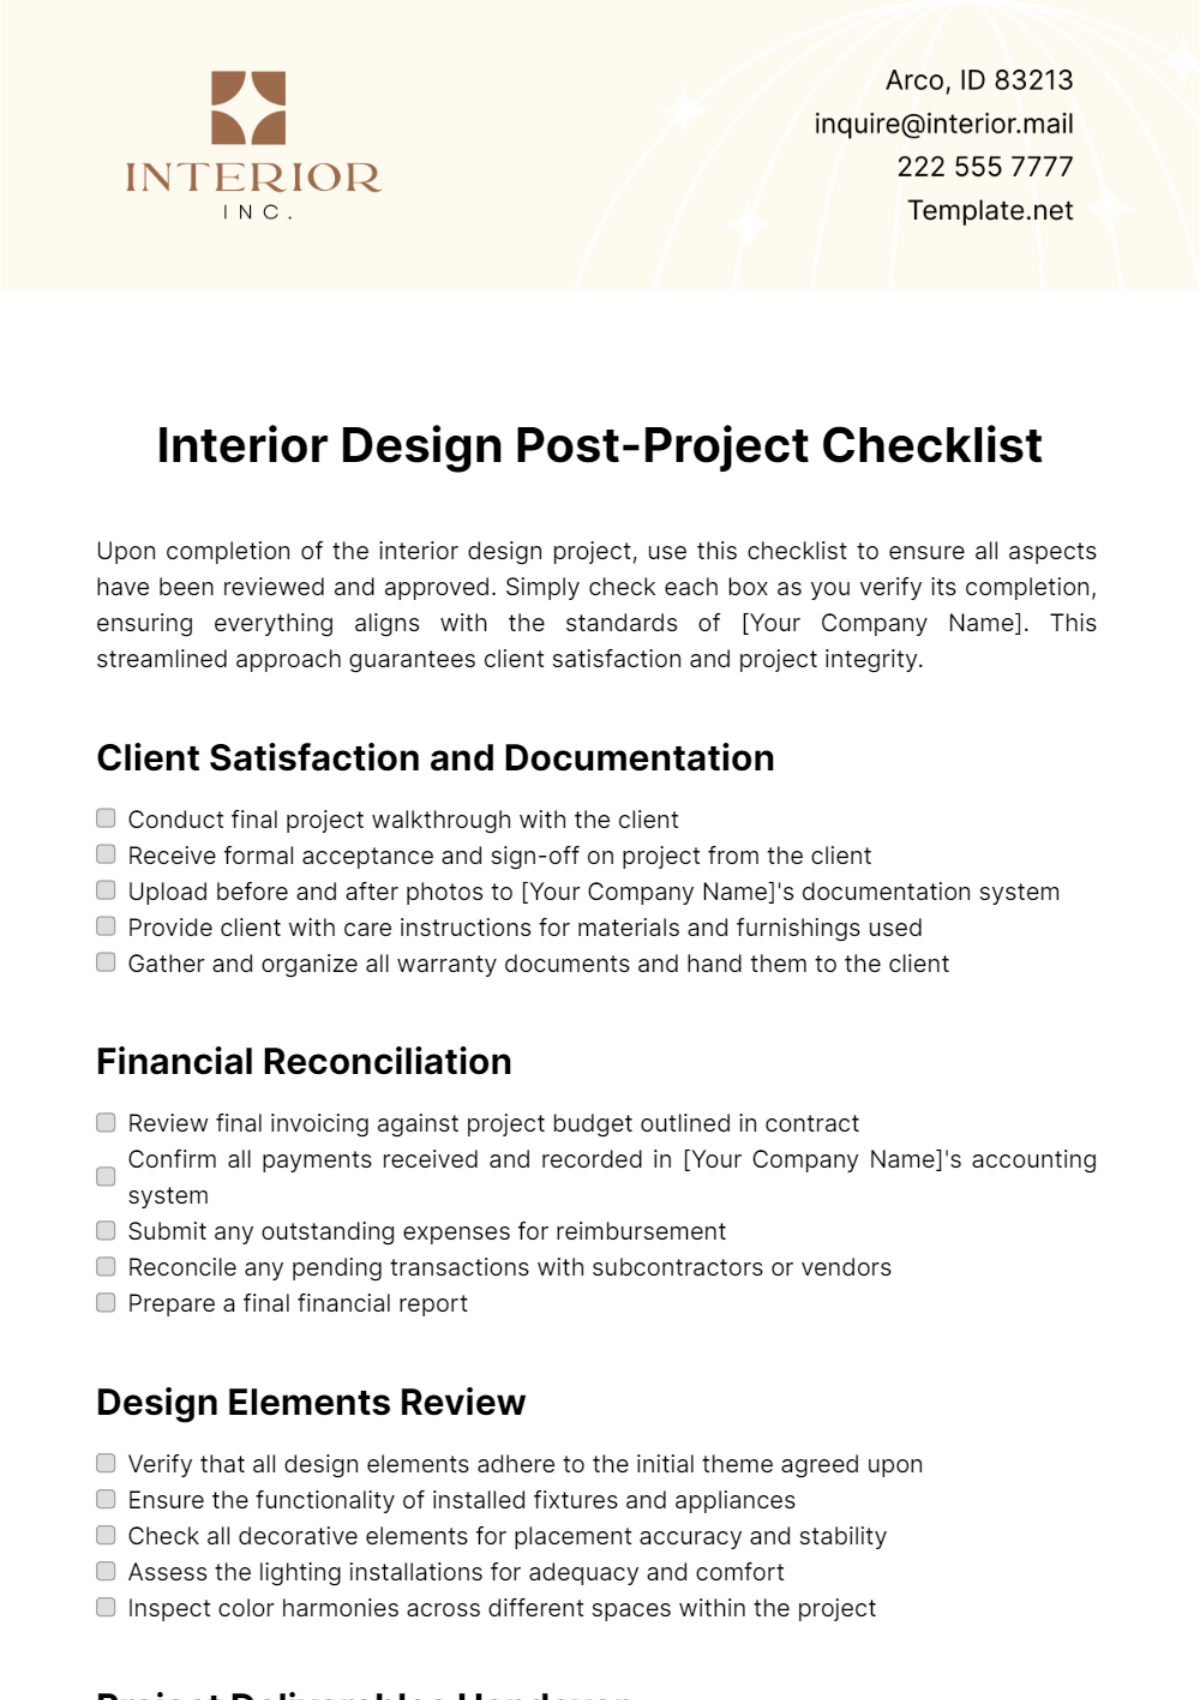 Interior Design Post-Project Checklist Template